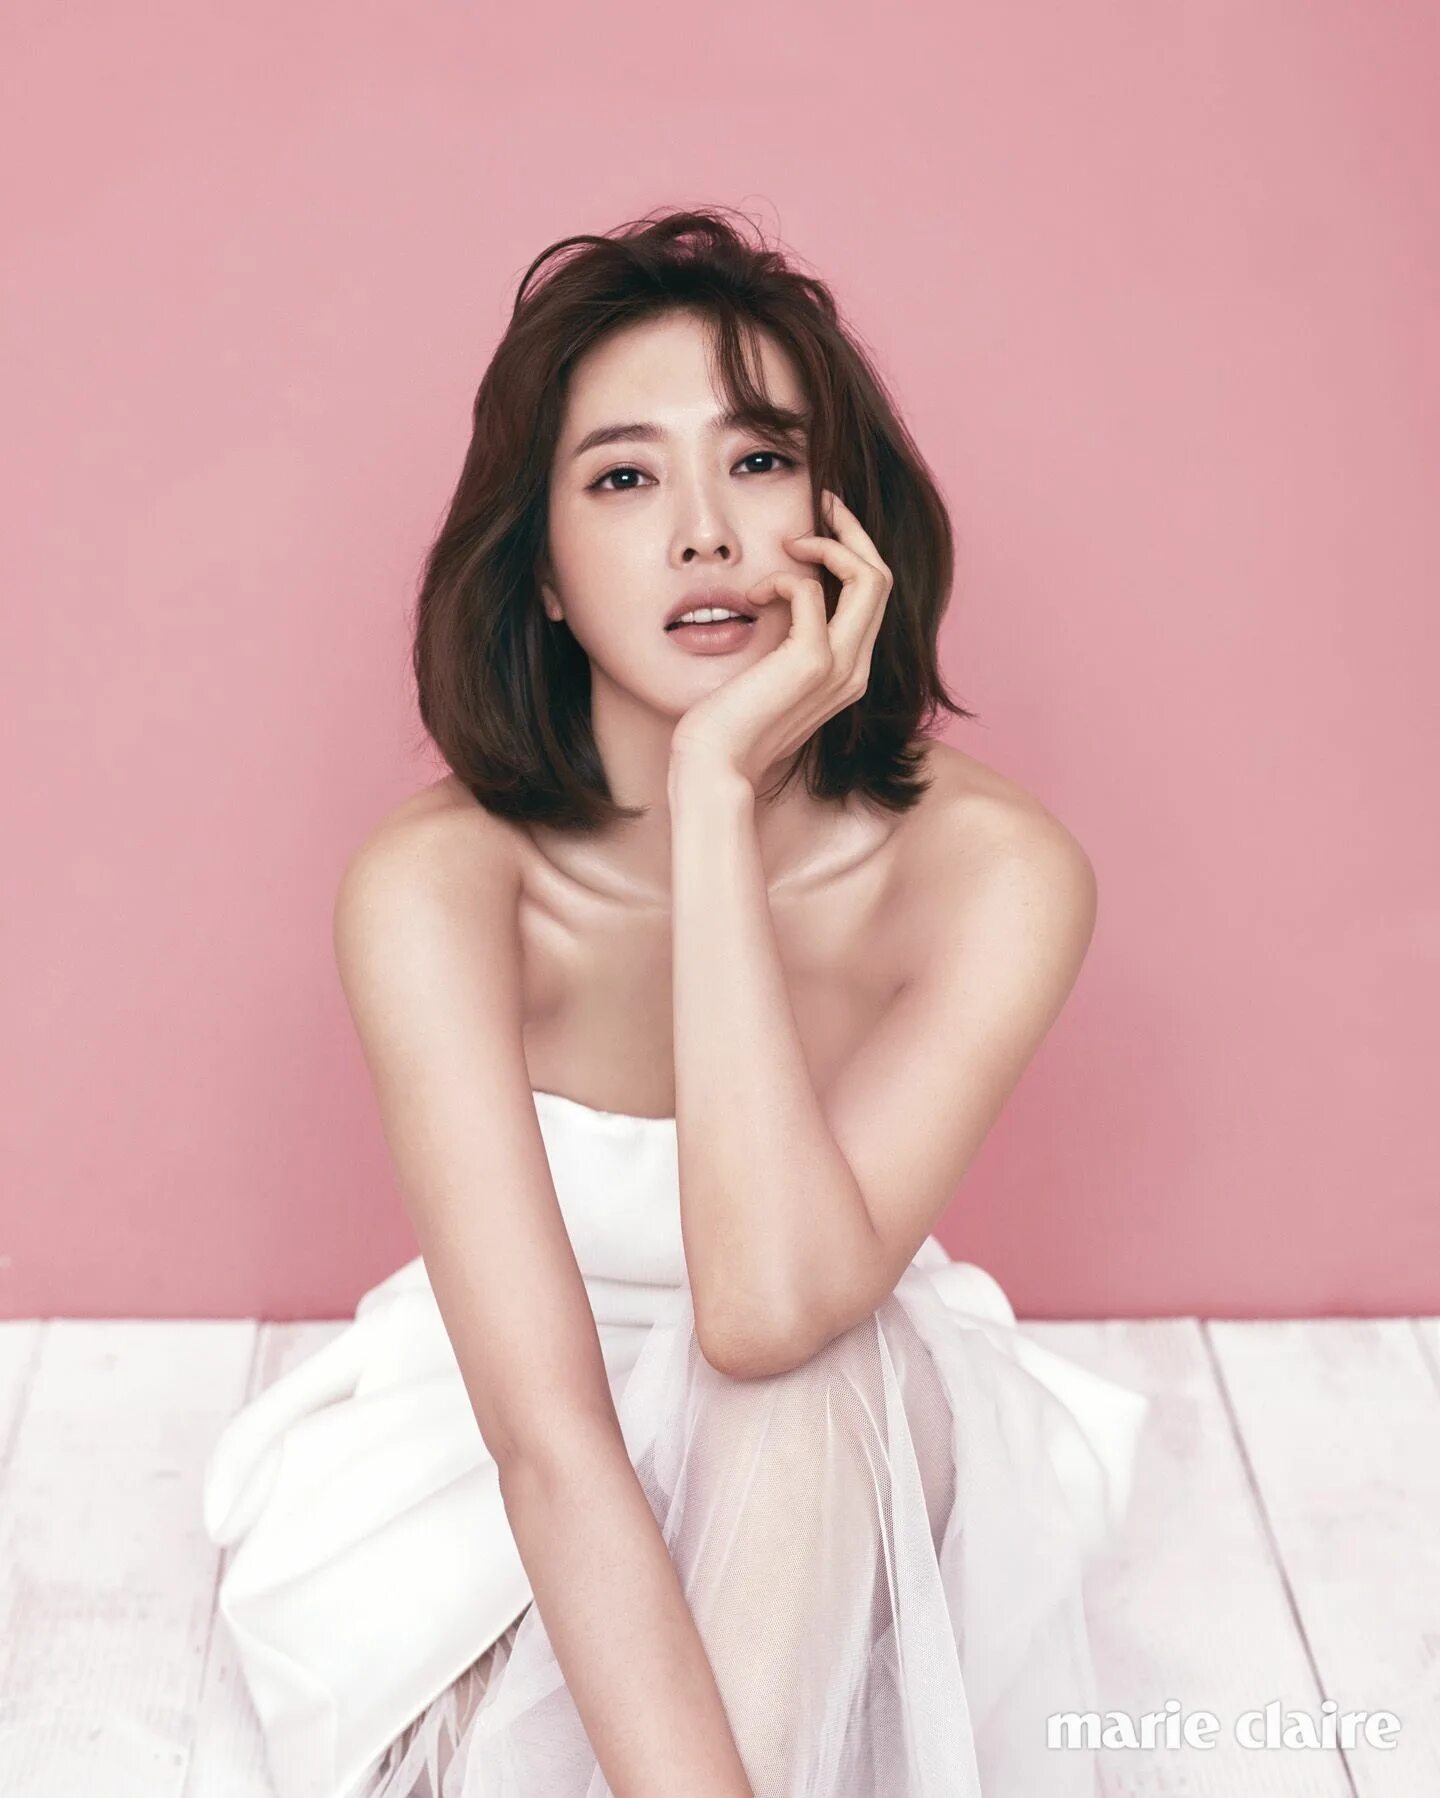 Wang Ji Hye. Ван Чжи хё. Ван Чжи вон. Ван Джи-Хе корейская актриса.